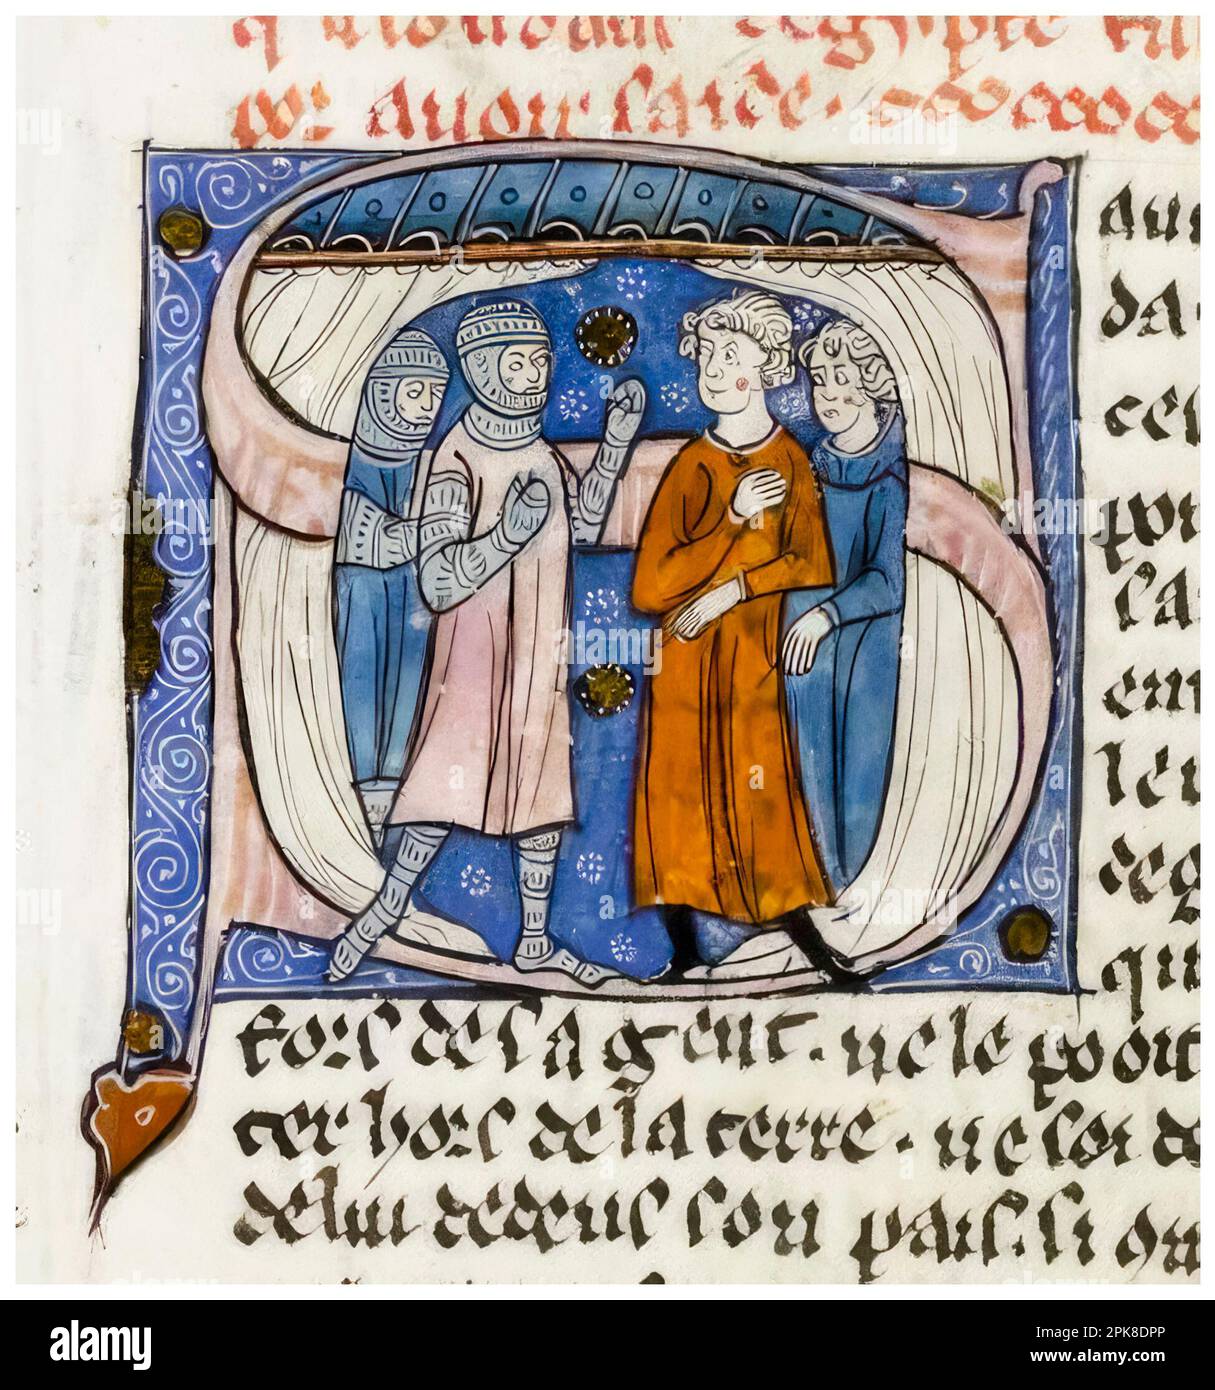 Croisés et deux hommes discutant du renouveau du Traité entre le Sultan d'Égypte et le roi de Jérusalem, peinture manuscrite illuminée, vers 1295-1299 Banque D'Images